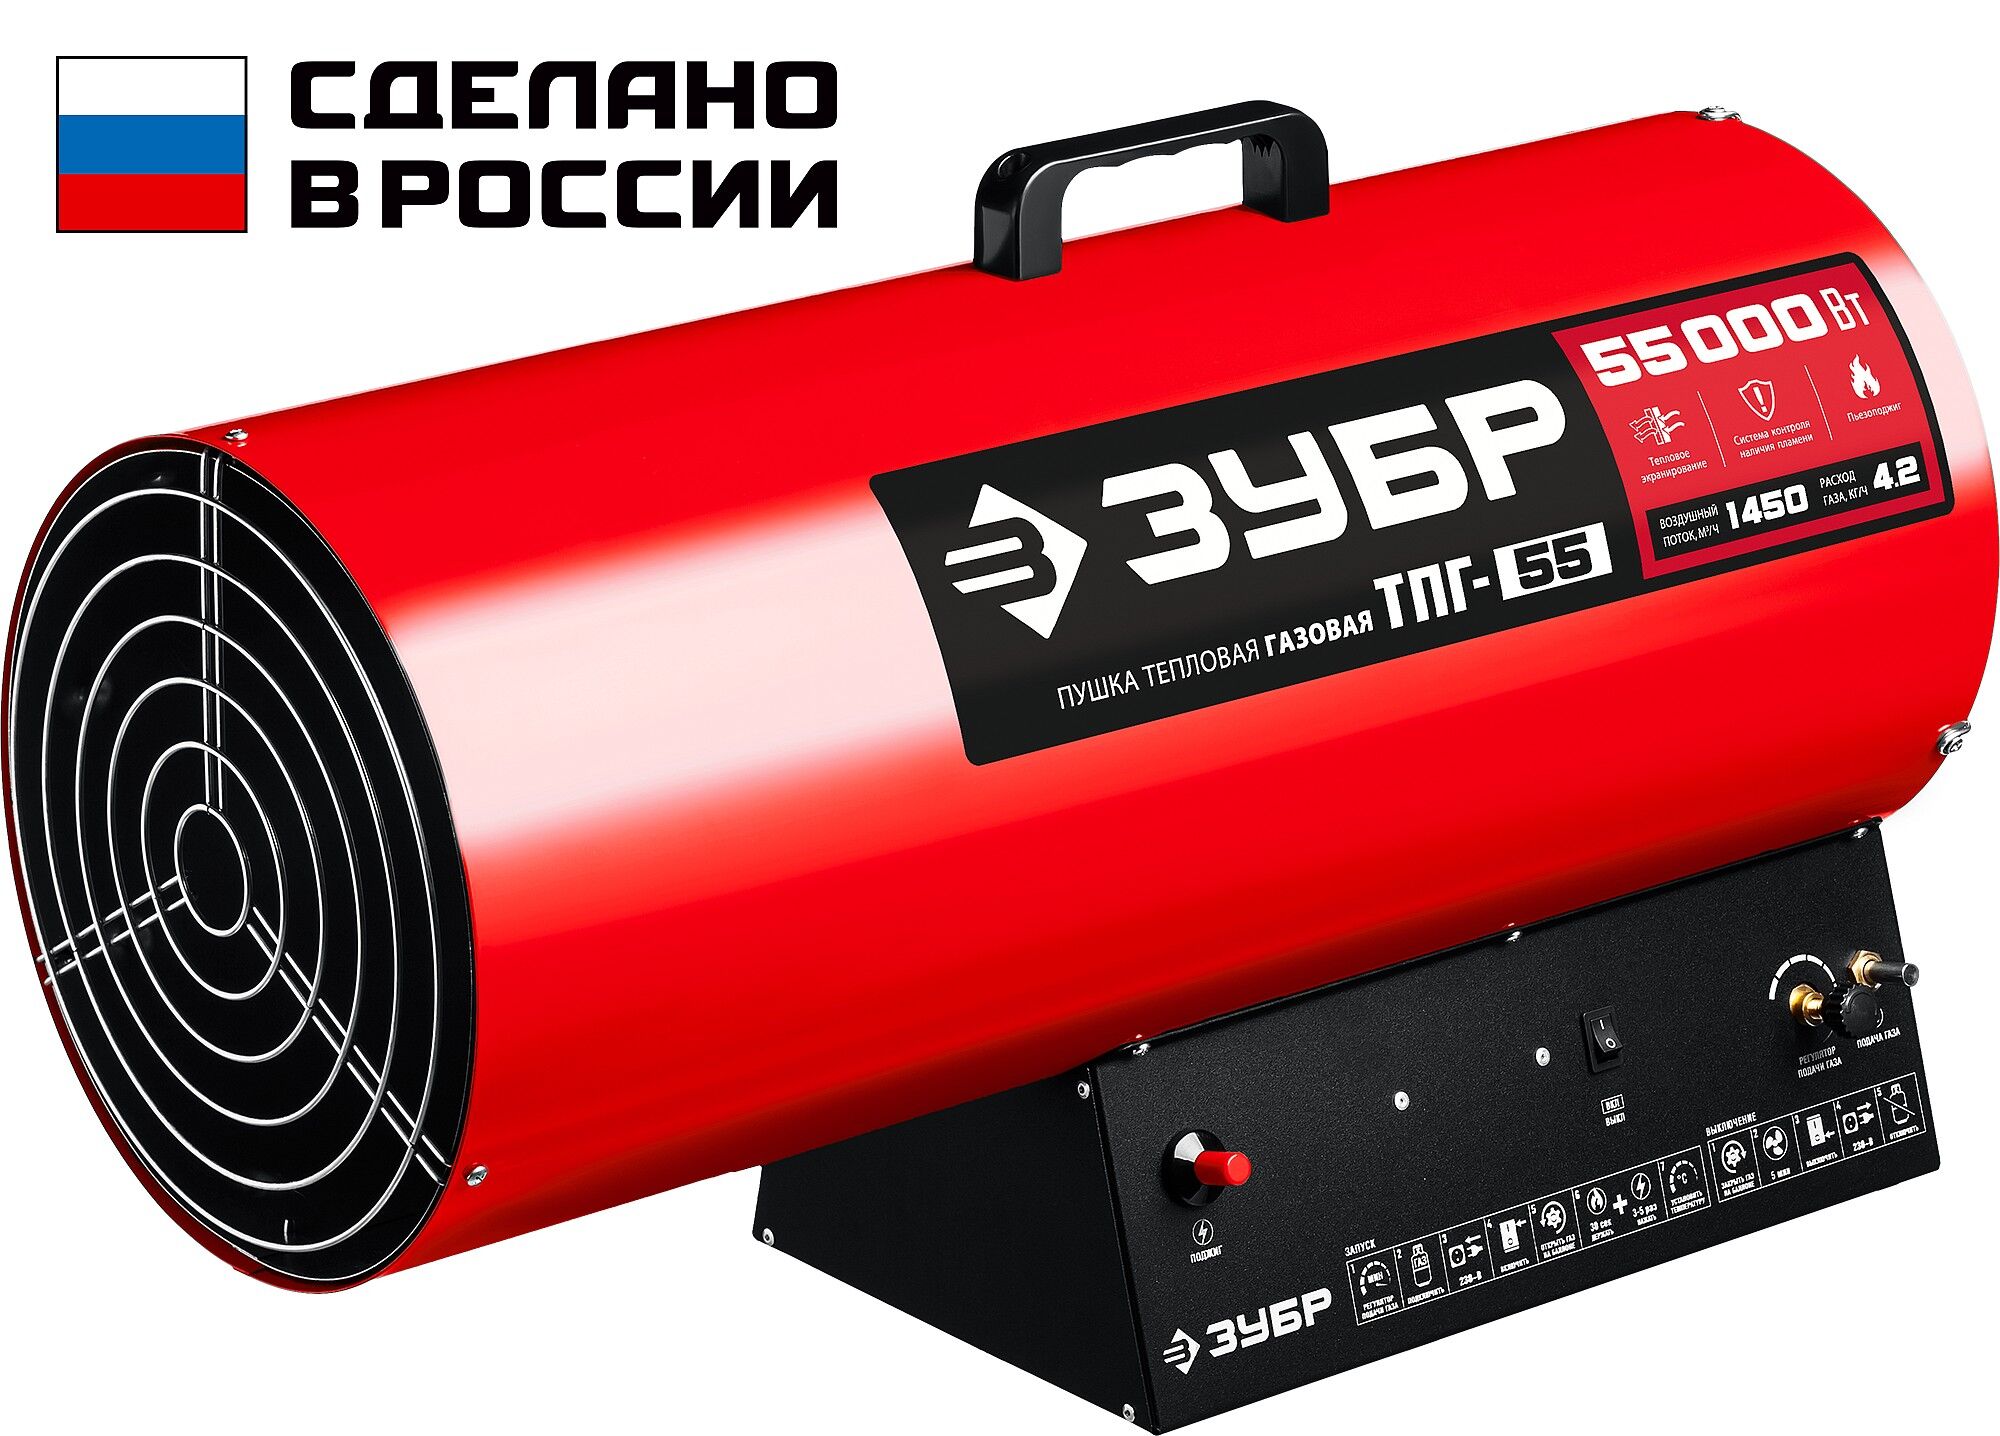 ЗУБР 55 кВт, газовая тепловая пушка (ТПГ-55) Зубр